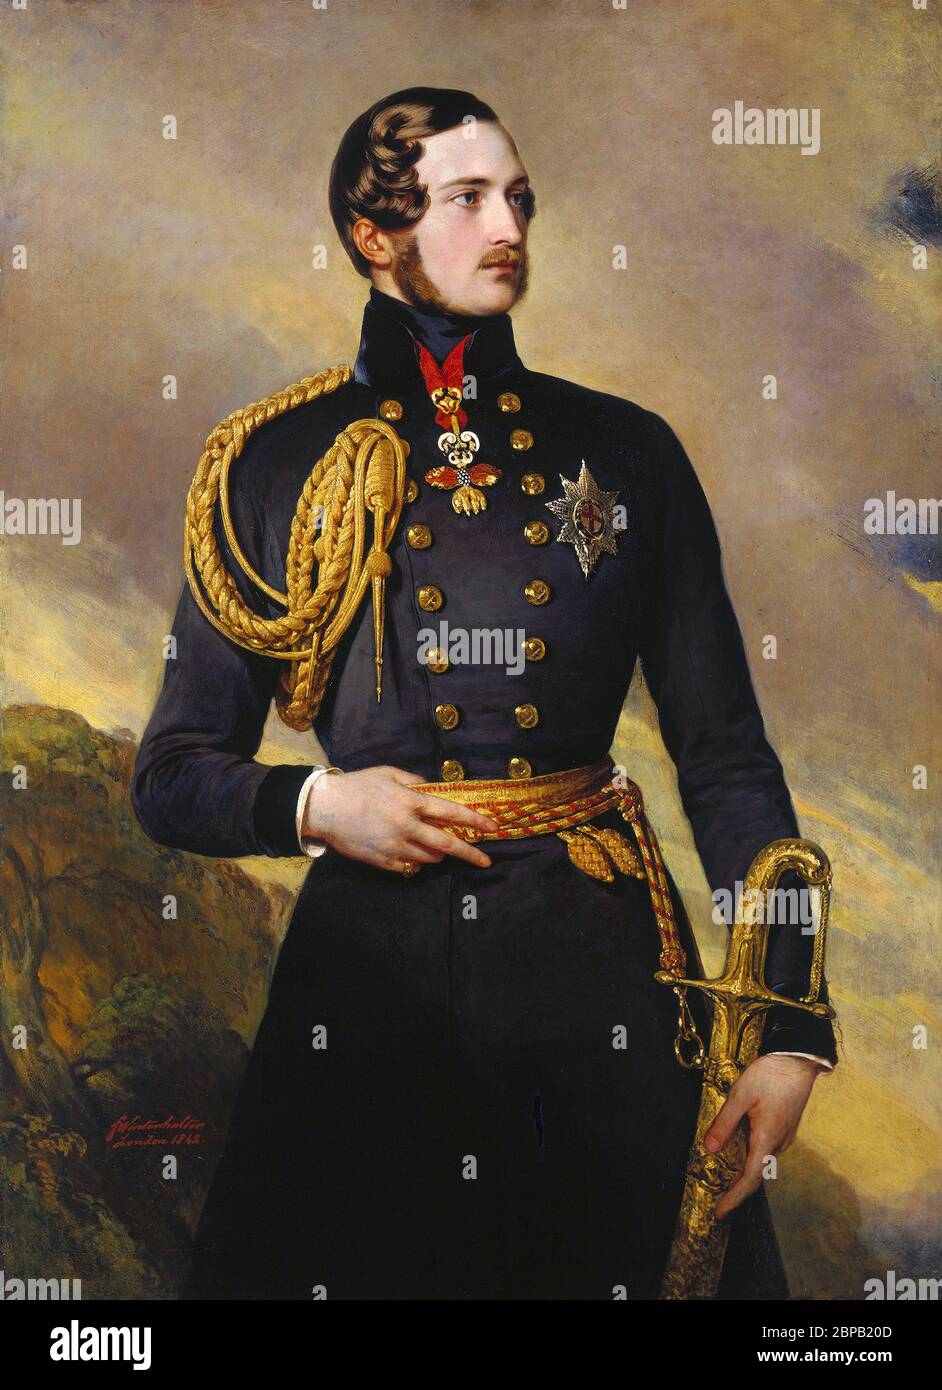 Prinz Albert von Franz Xaver Winterhalter, Öl auf Leinwand, 1842. Prinz Albert von Sachsen-Coburg und Gotha (Franz Albert Augustus Charles Emmanue: 1819–1861) war Prinz Consort als Ehemann von Königin Victoria. Stockfoto